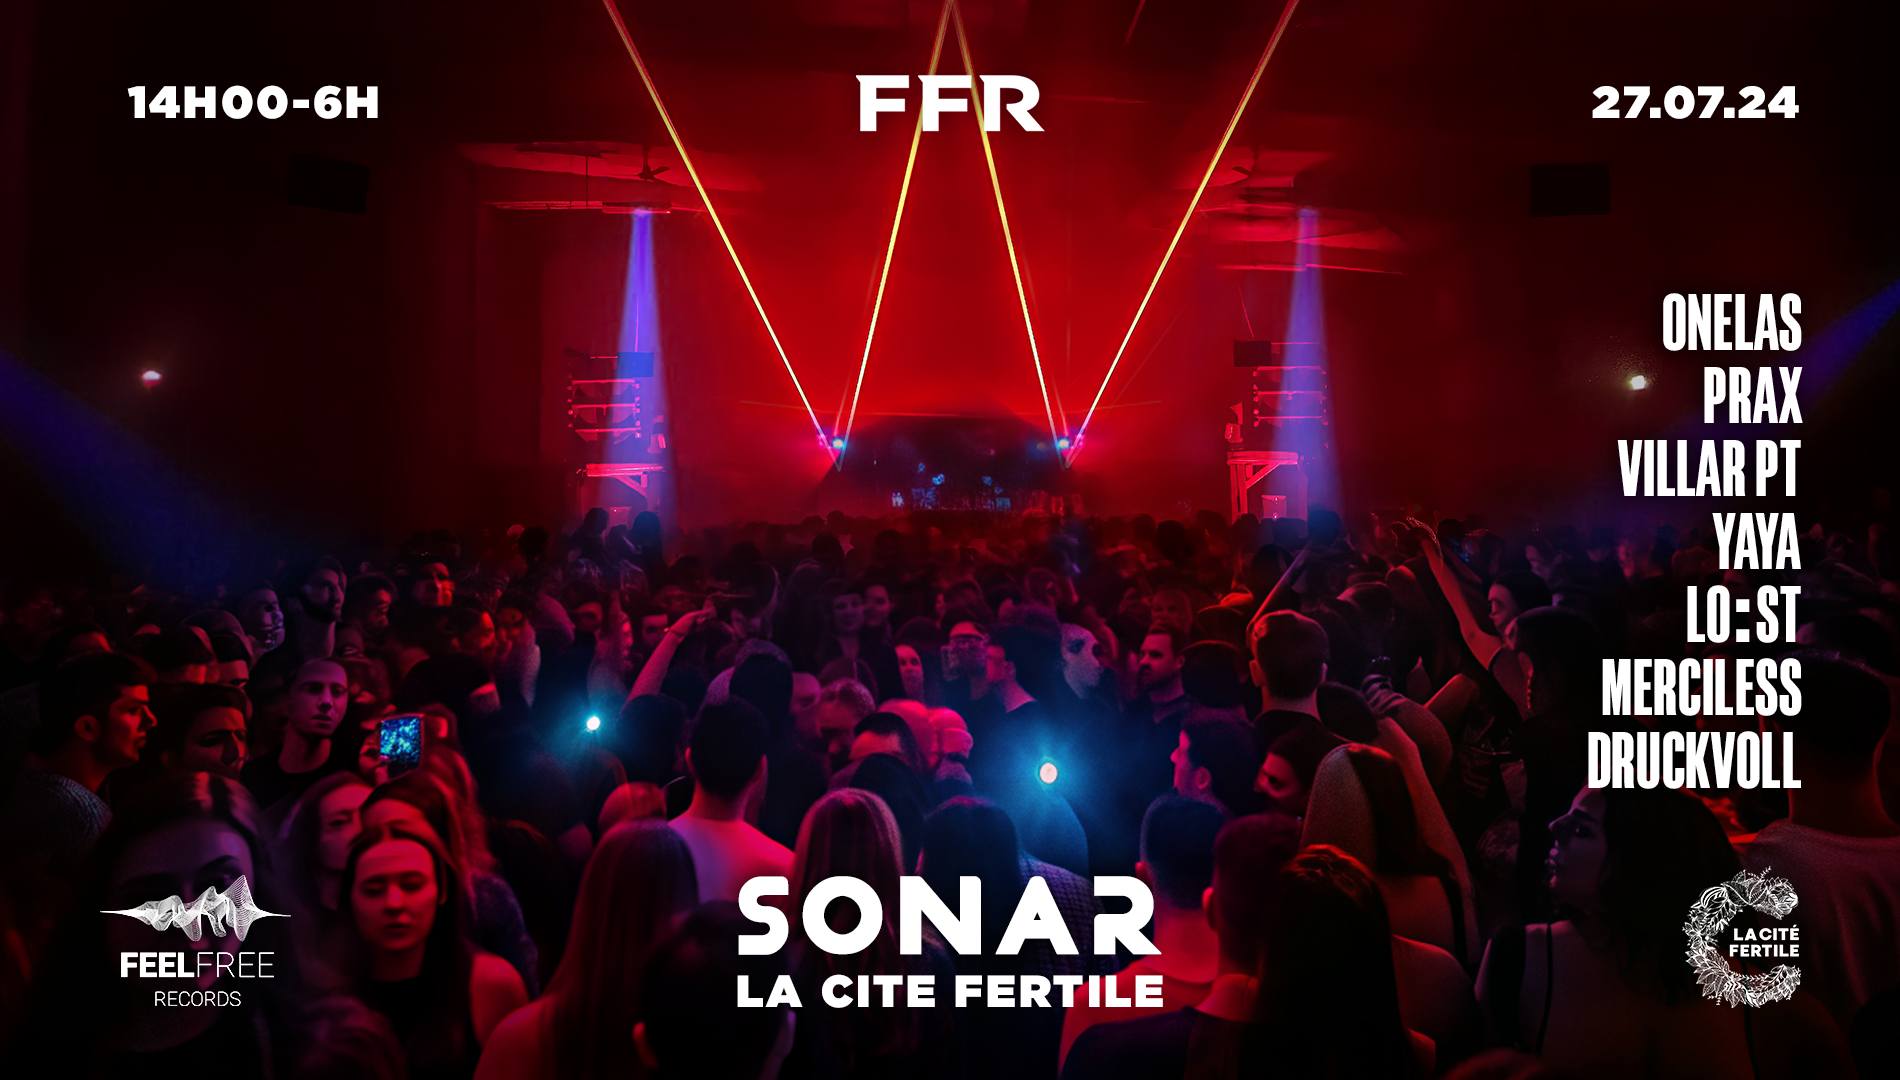 FFR • SONAR